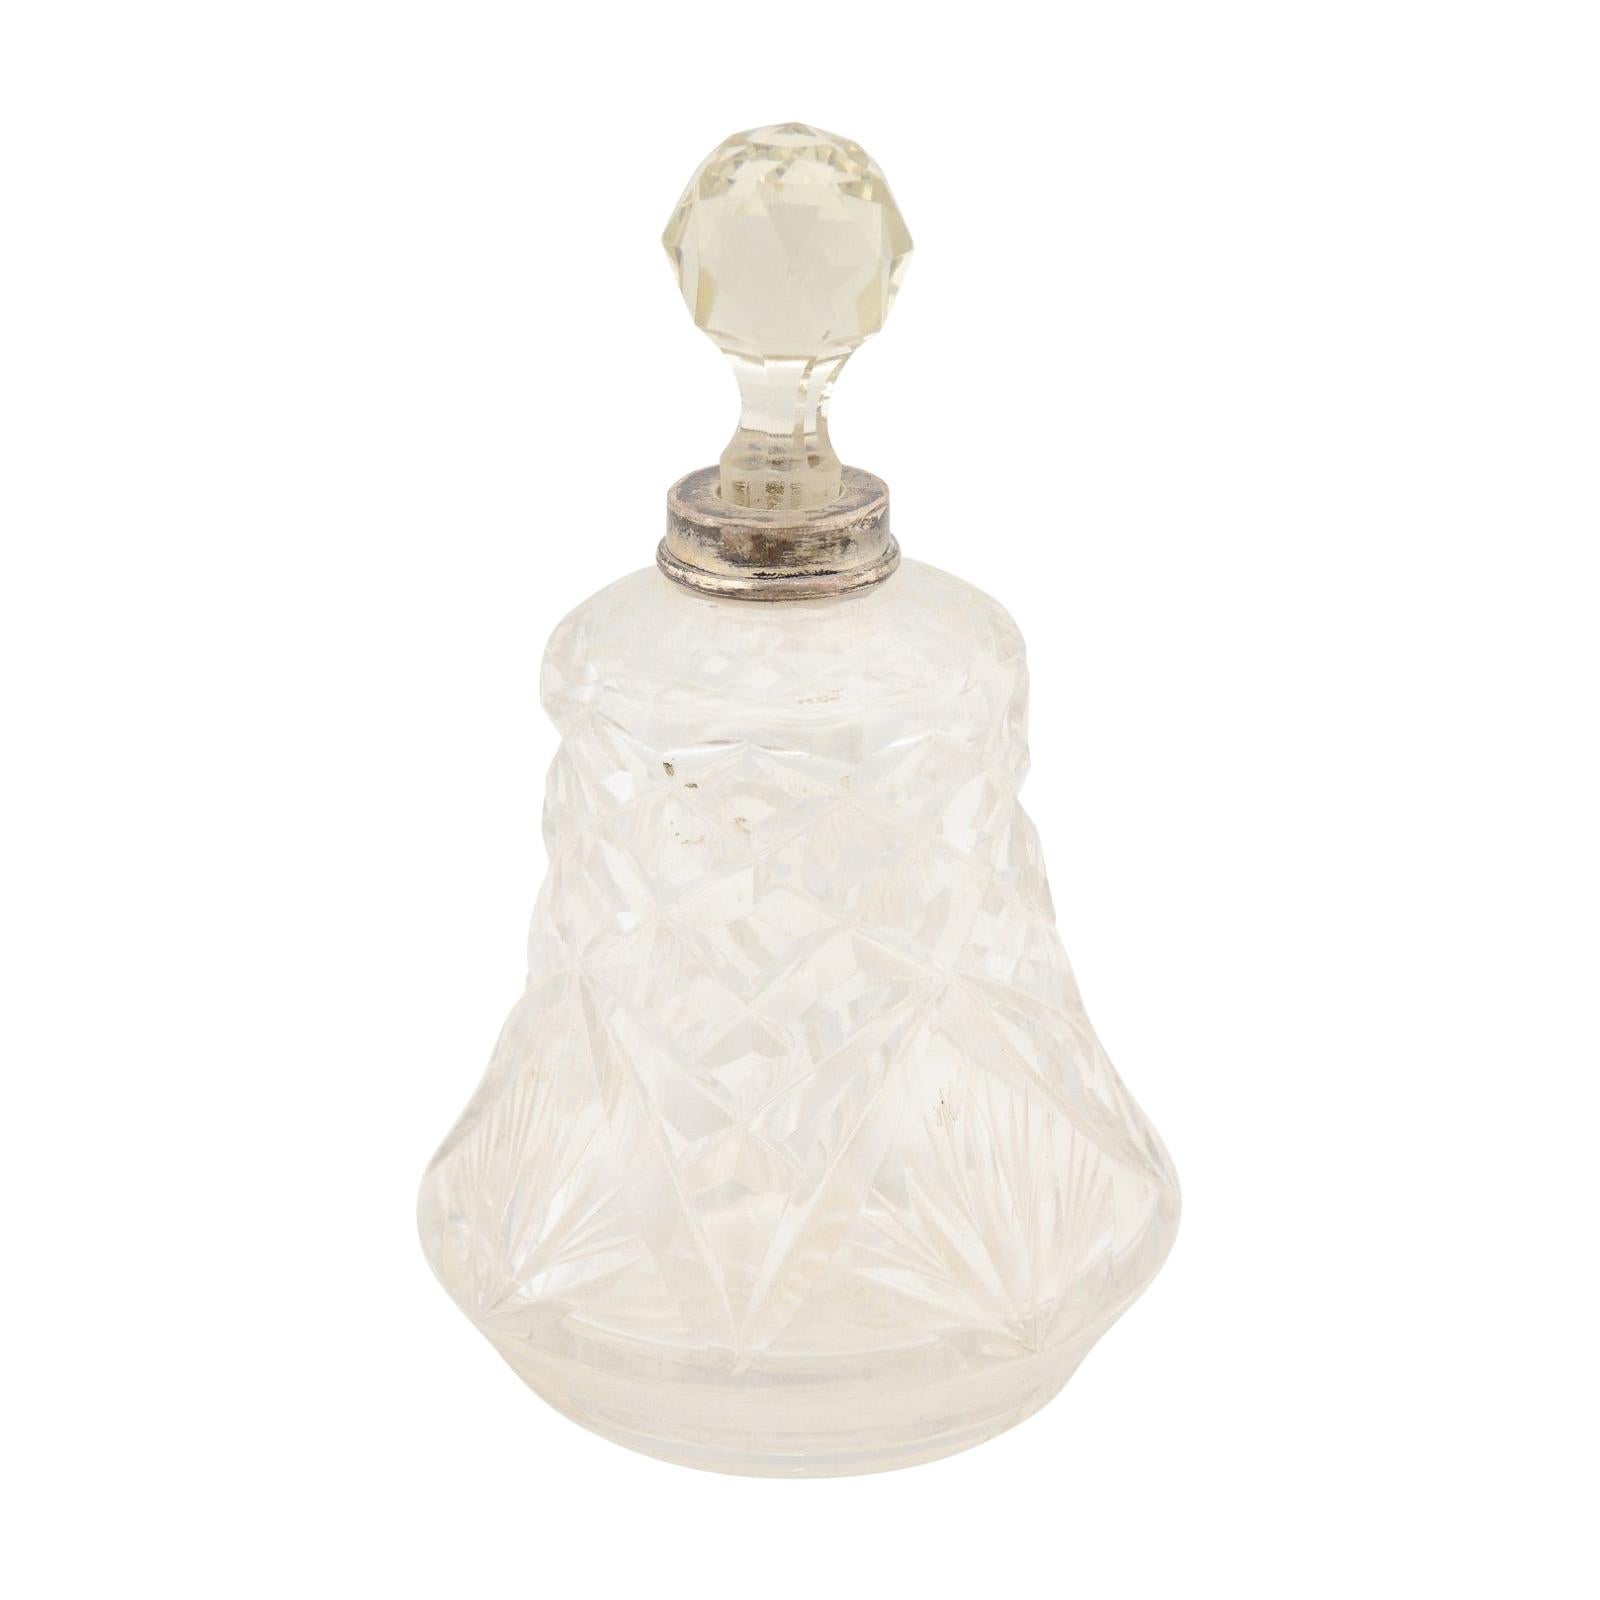 Französische Kristall-Toilettenflasche aus den 1920er Jahren mit Silberhals und Diamantmotiven